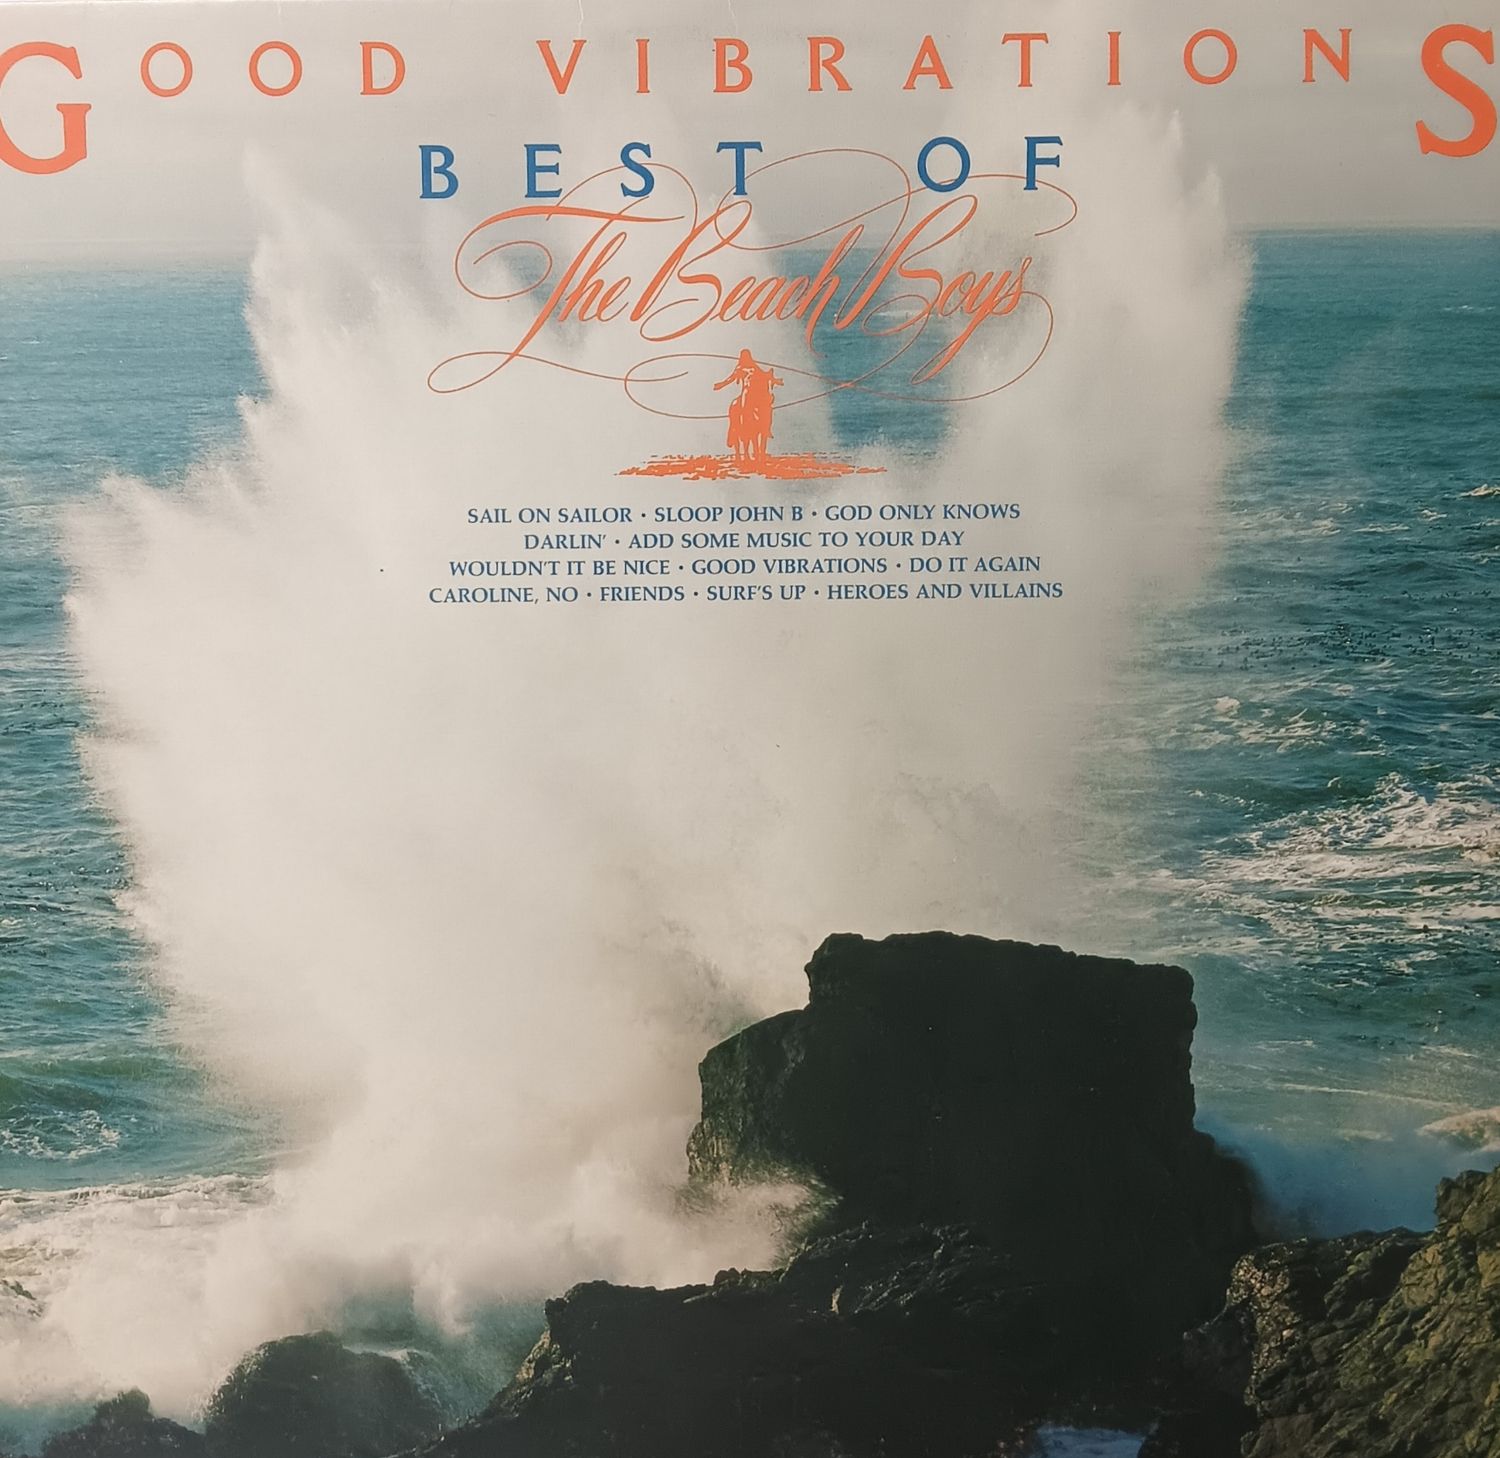 THE BEACH BOYS - Good Vibrations Best of The Beach Boys